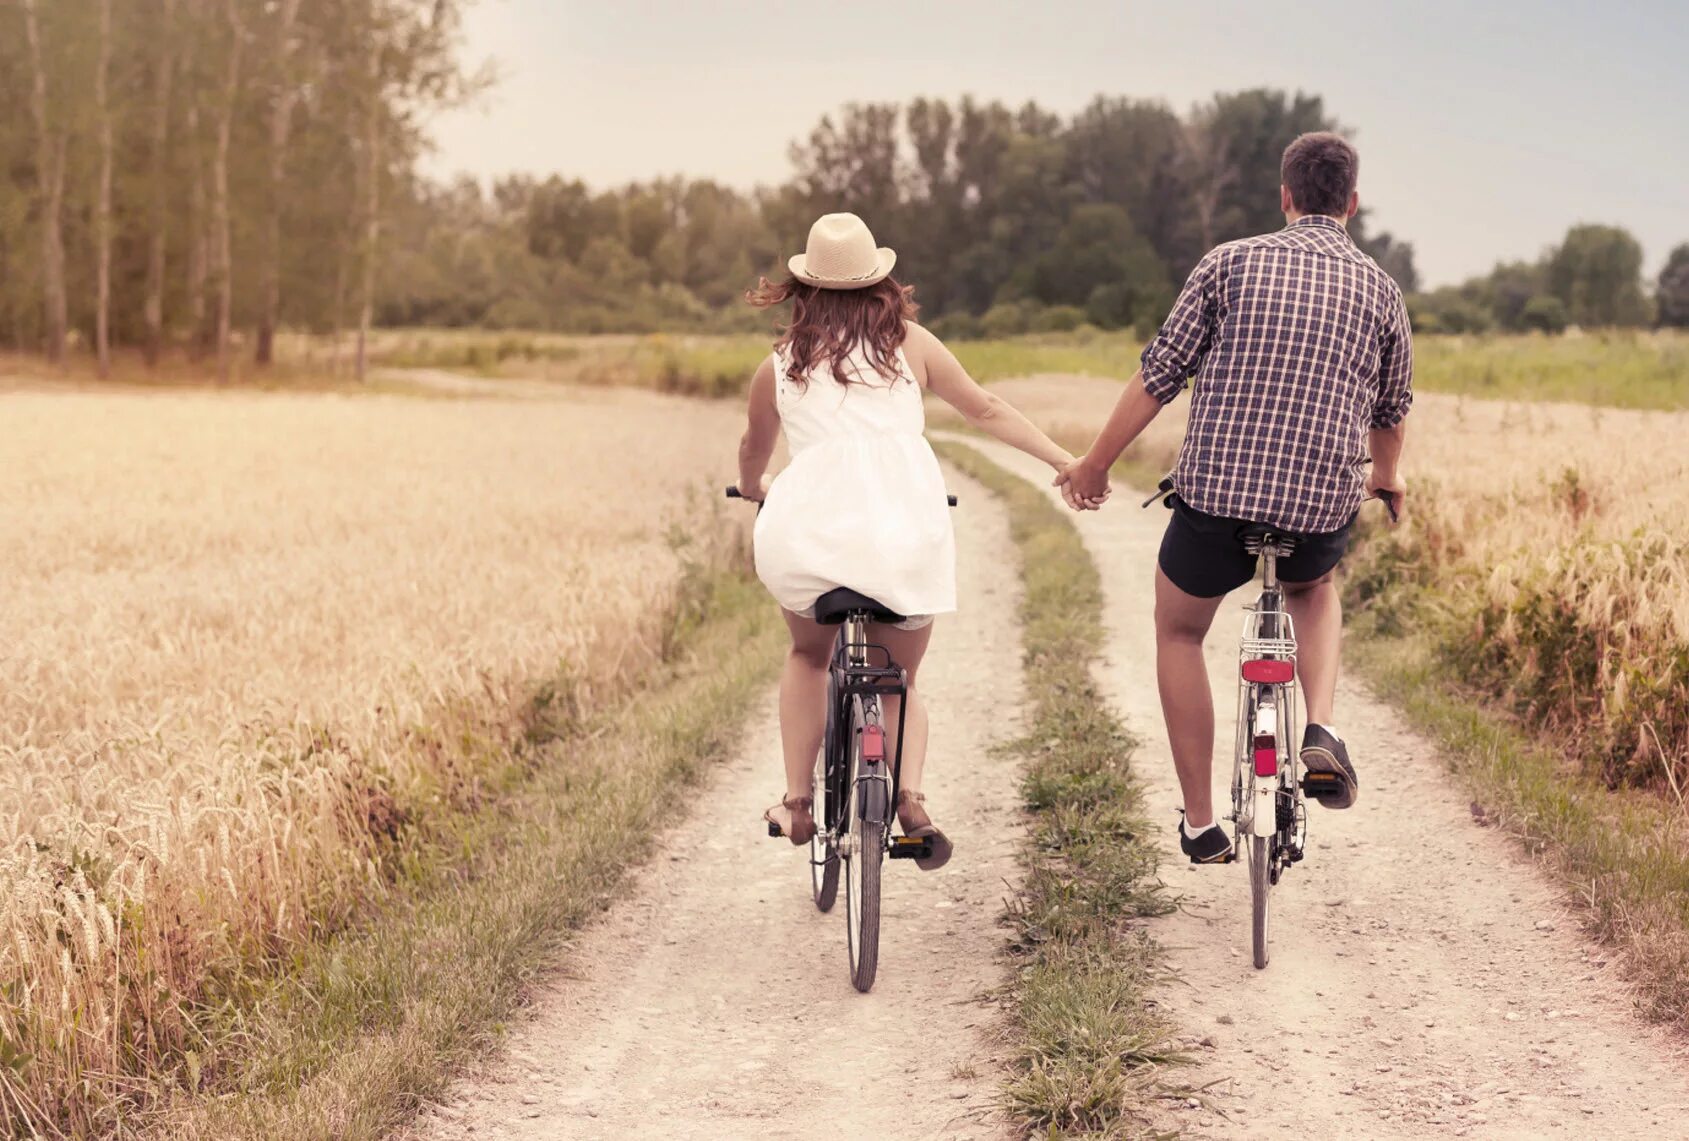 Проводить время с любимым человеком. Прогулка на велосипеде. Парень с девушкой на велосипеде. Велосипед для двоих. Пара катается на велосипедах.